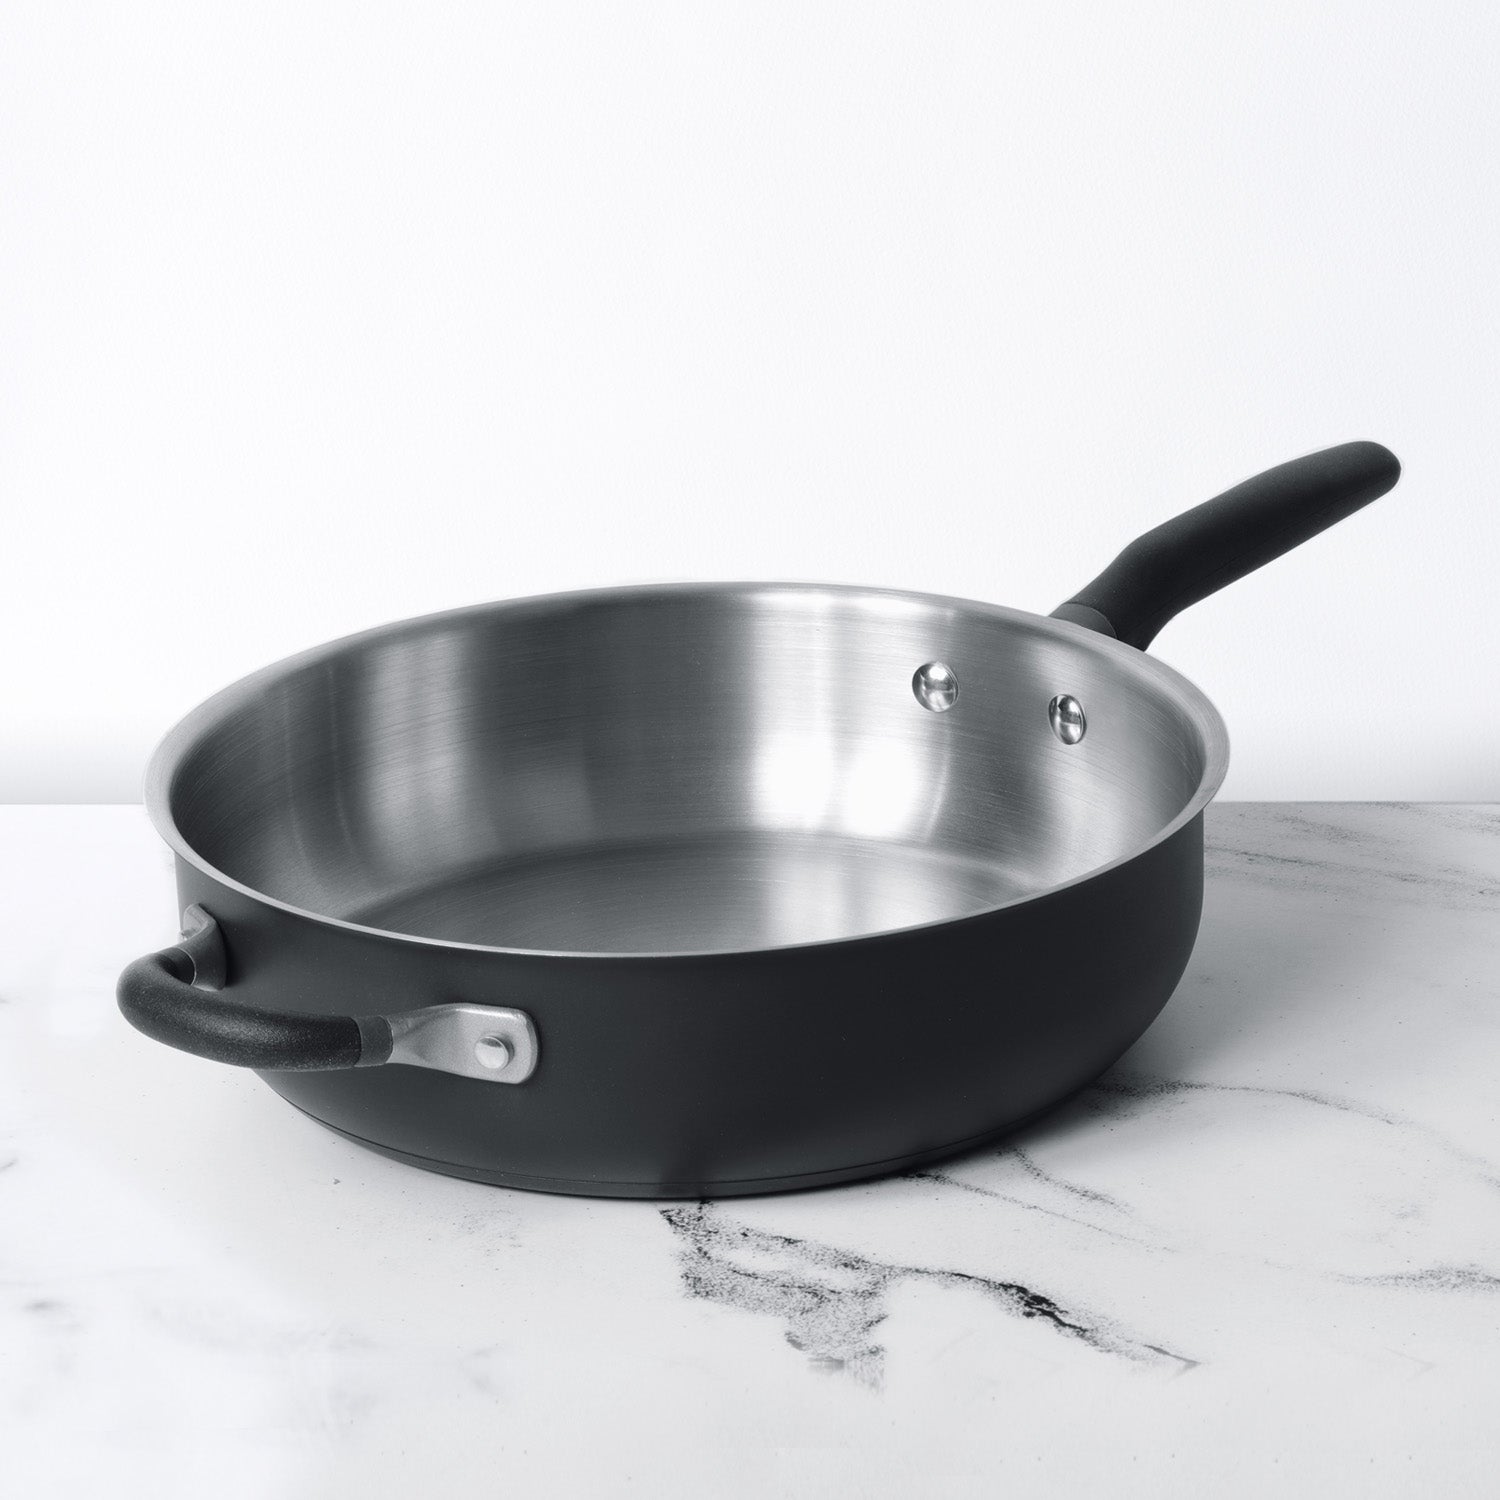 Meyer Cookware - Accent Stainless Steel Sauté Pan